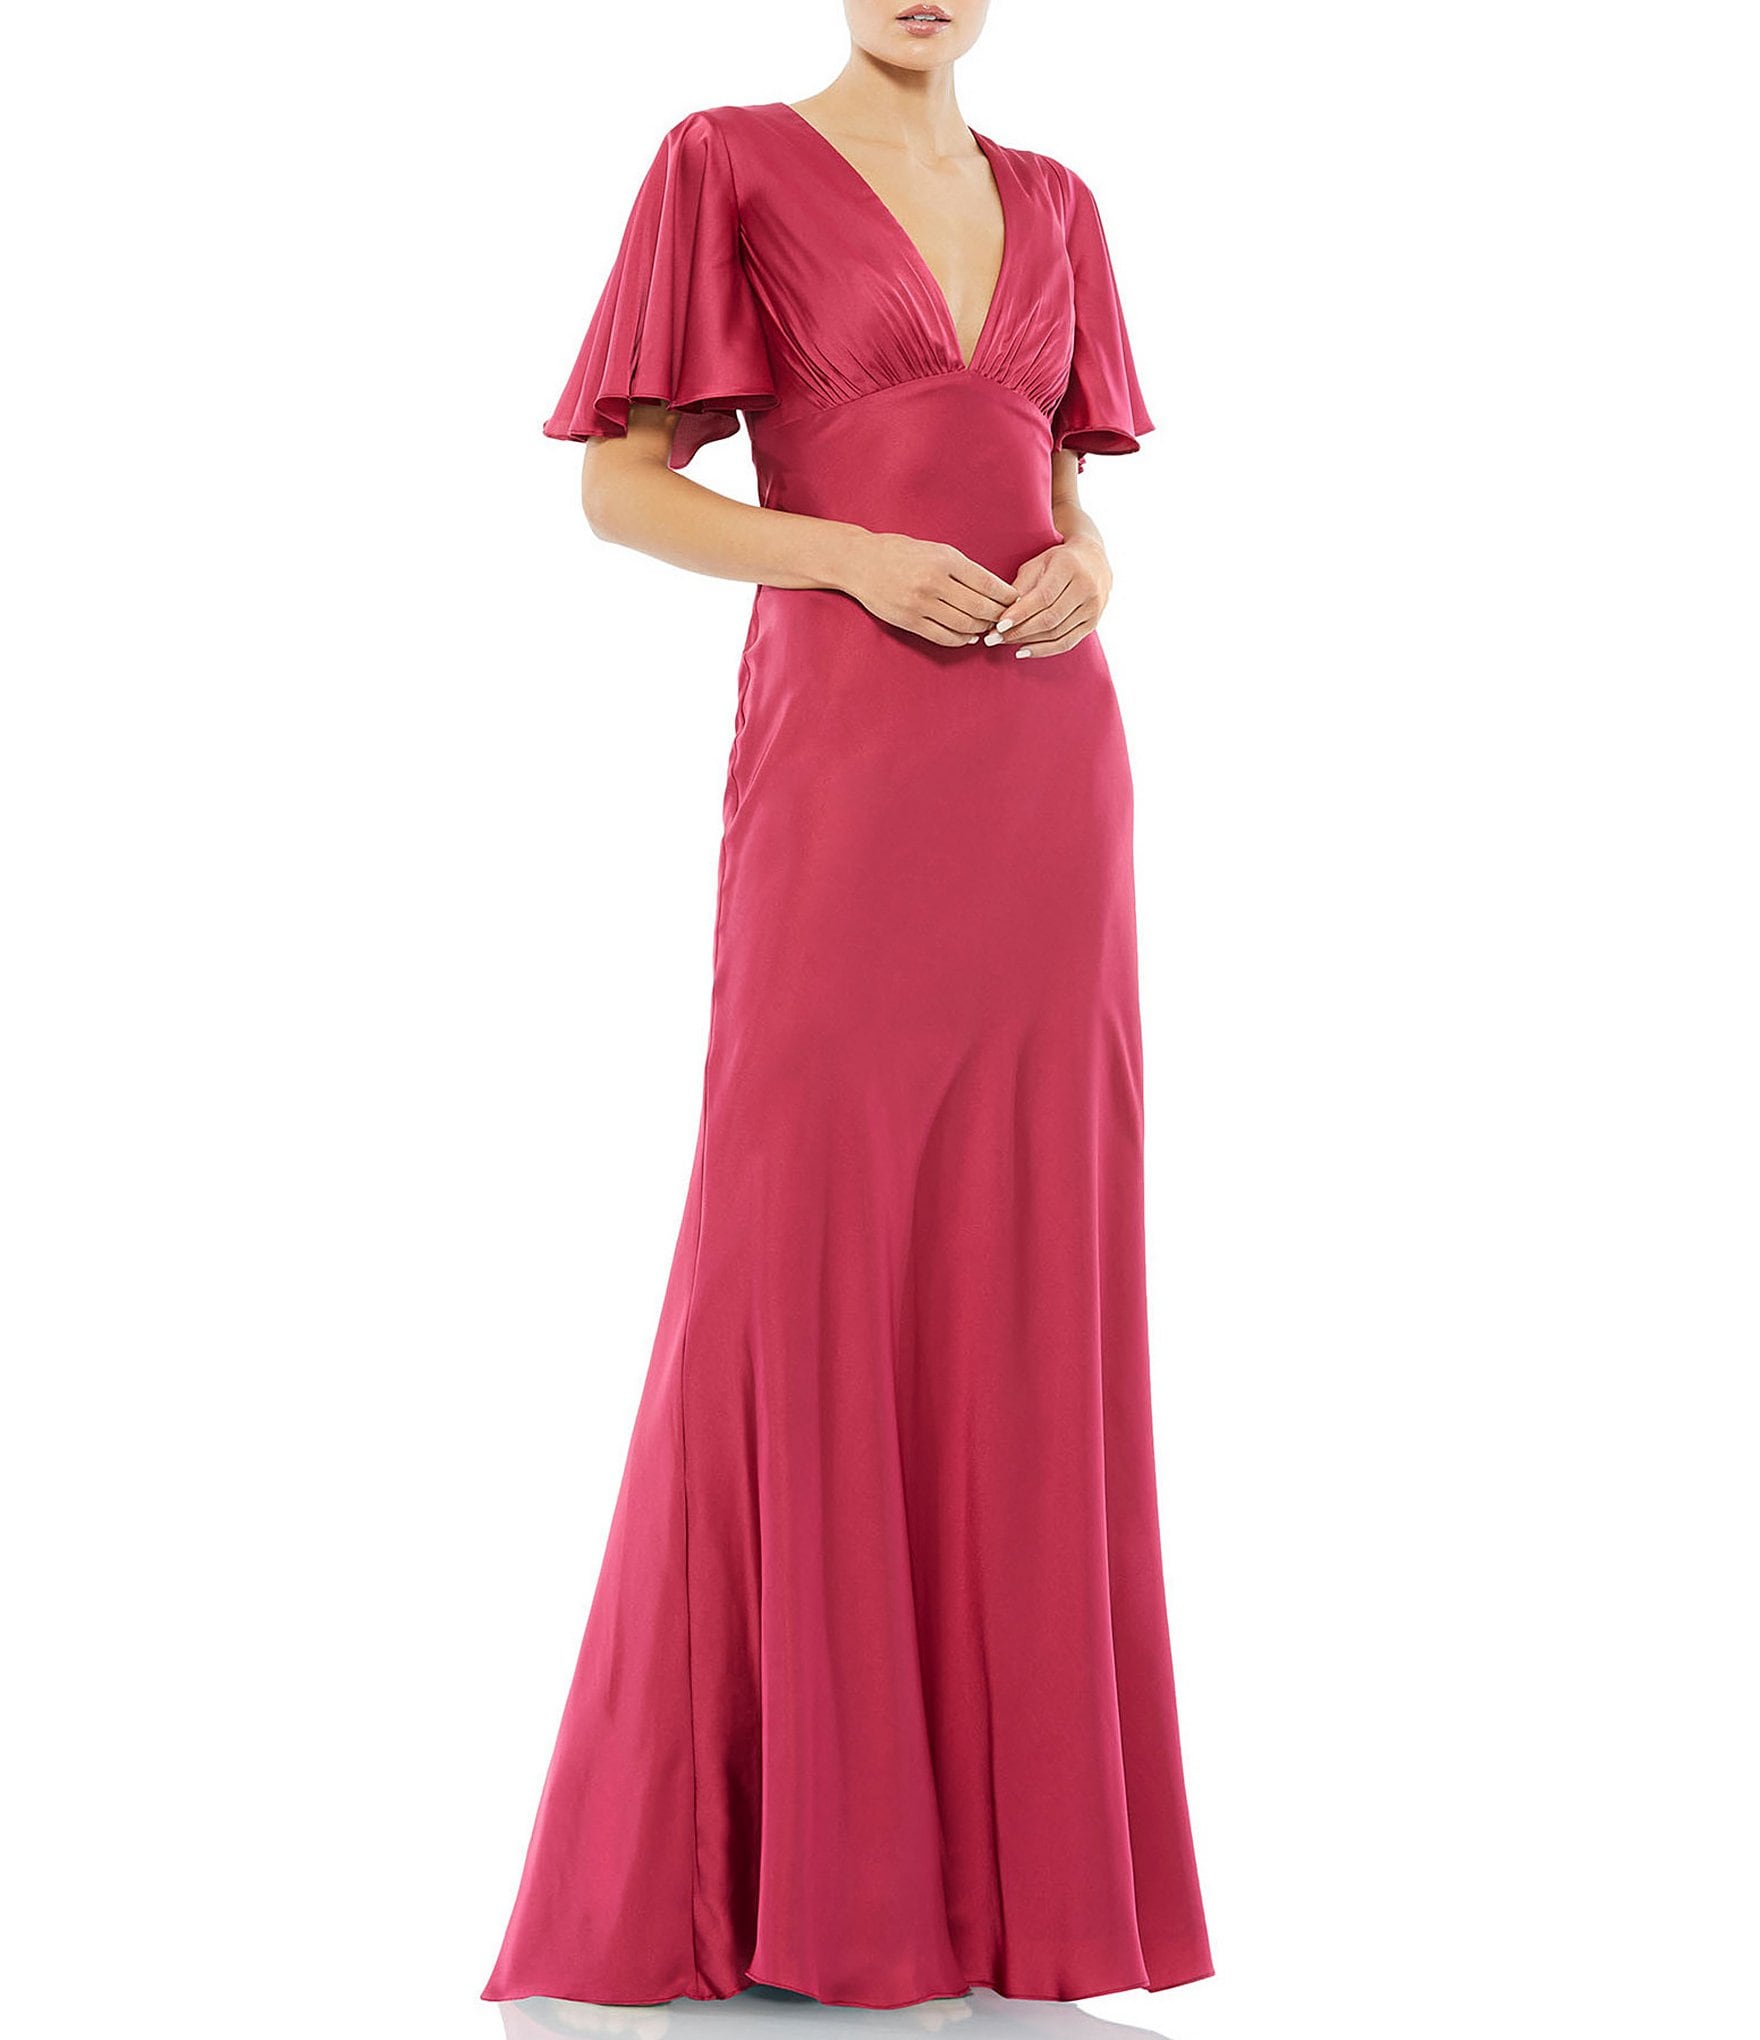 social ruffle: Women's Formal Dresses & Evening Gowns | Dillard's